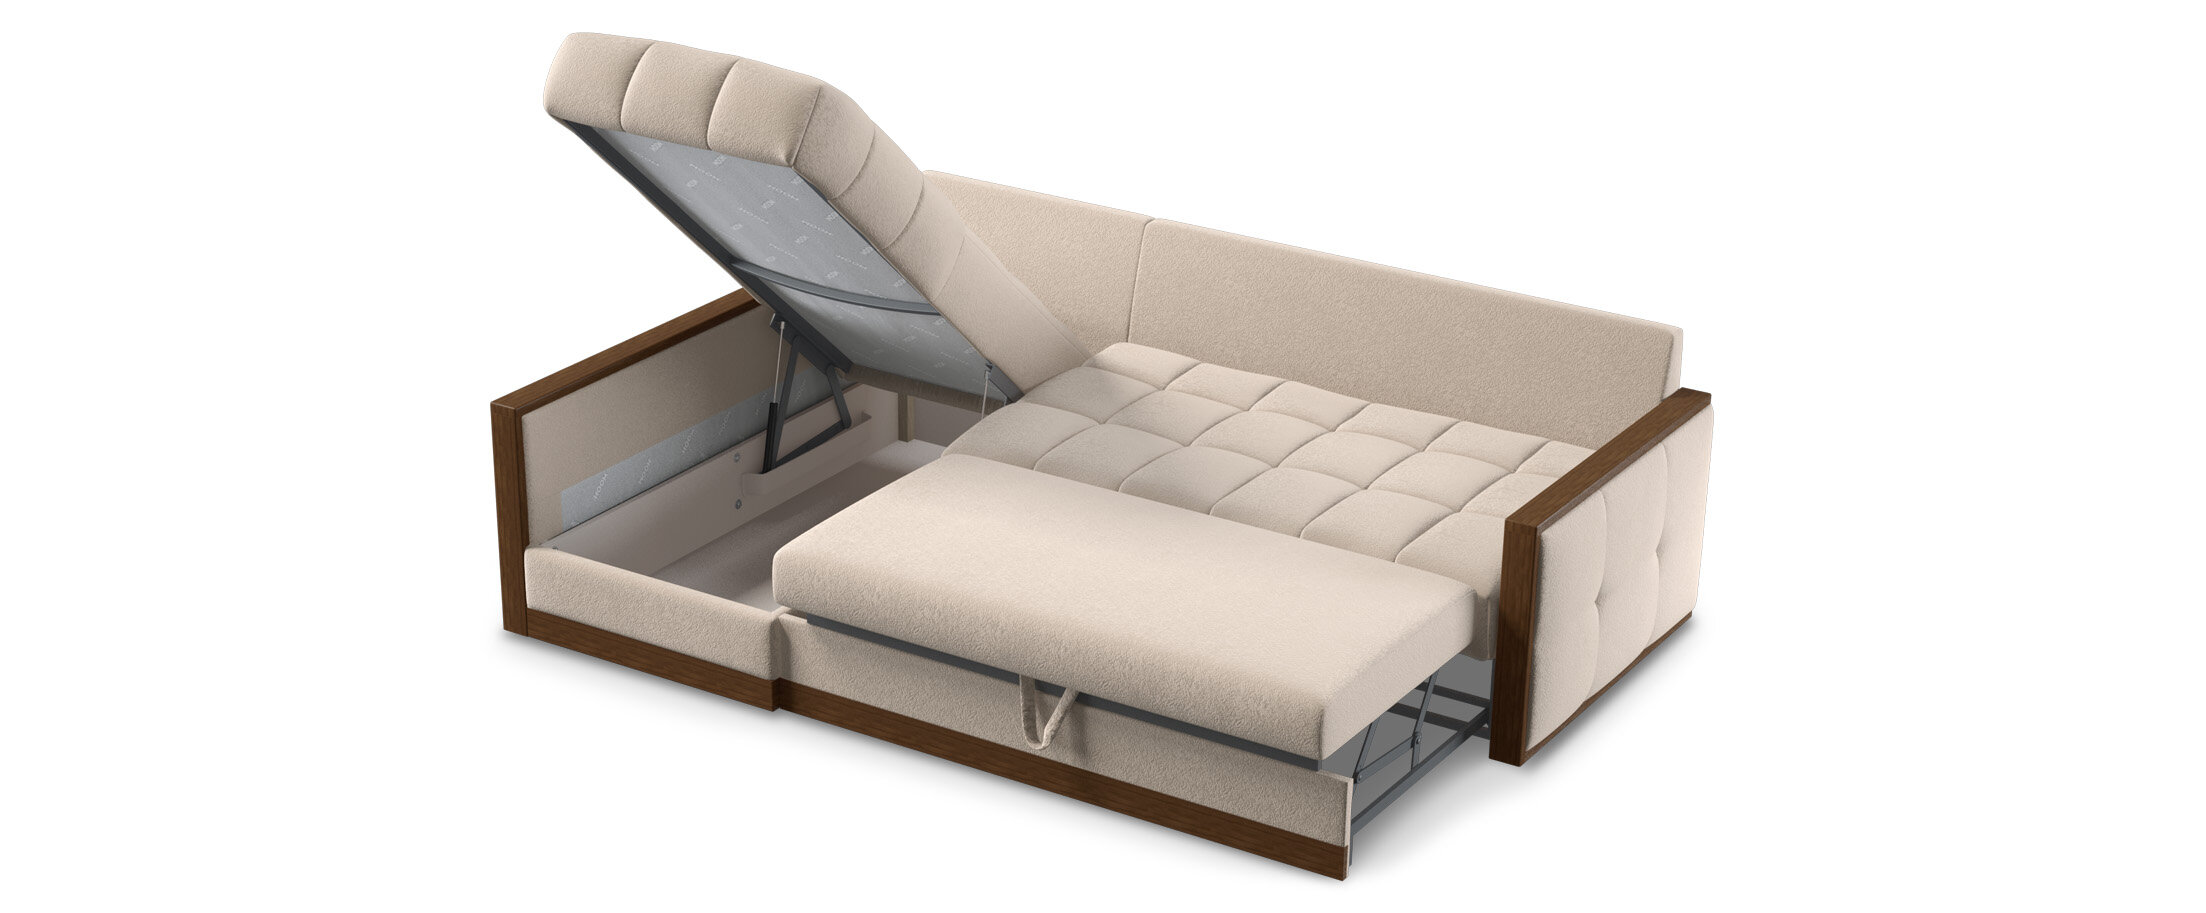 Механизмы трансформации диванов: какой лучше выбрать